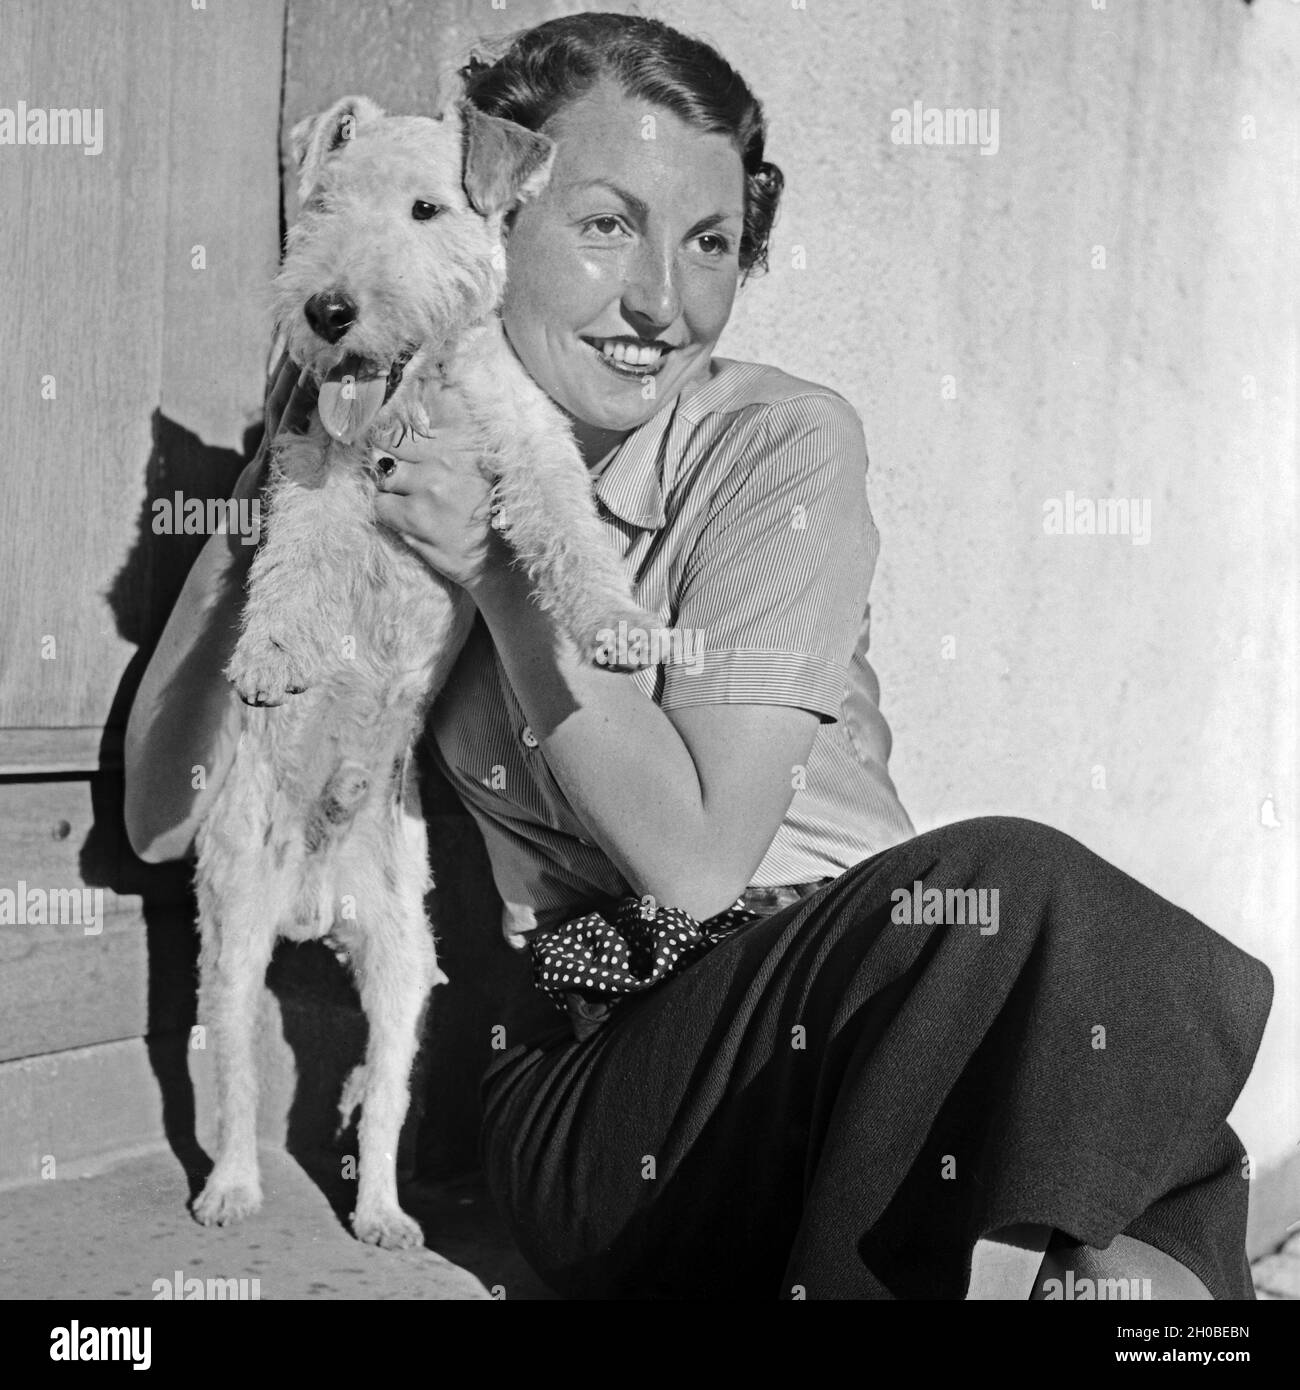 Eine junge Frau mit ihrem schmust Foxterrier, 1930er Jahre Deutschland. Une jeune femme câline avec son chiot fox terrier, Allemagne 1930. Banque D'Images